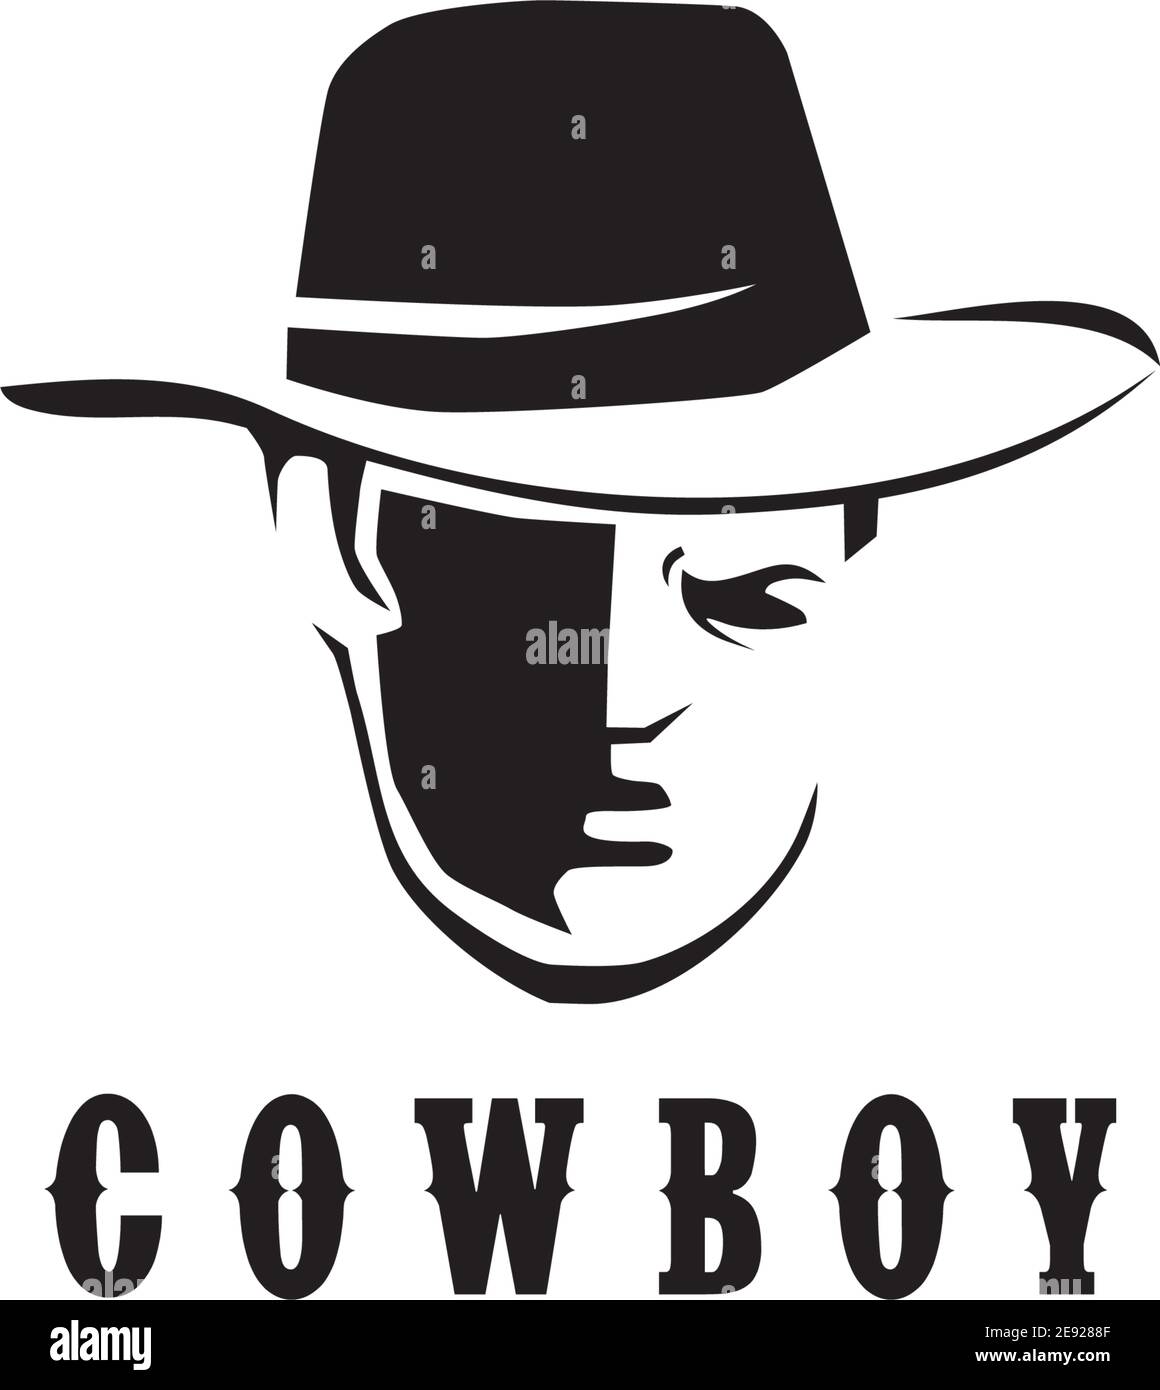 Cowboy logo design vector illustration template Stock Vector